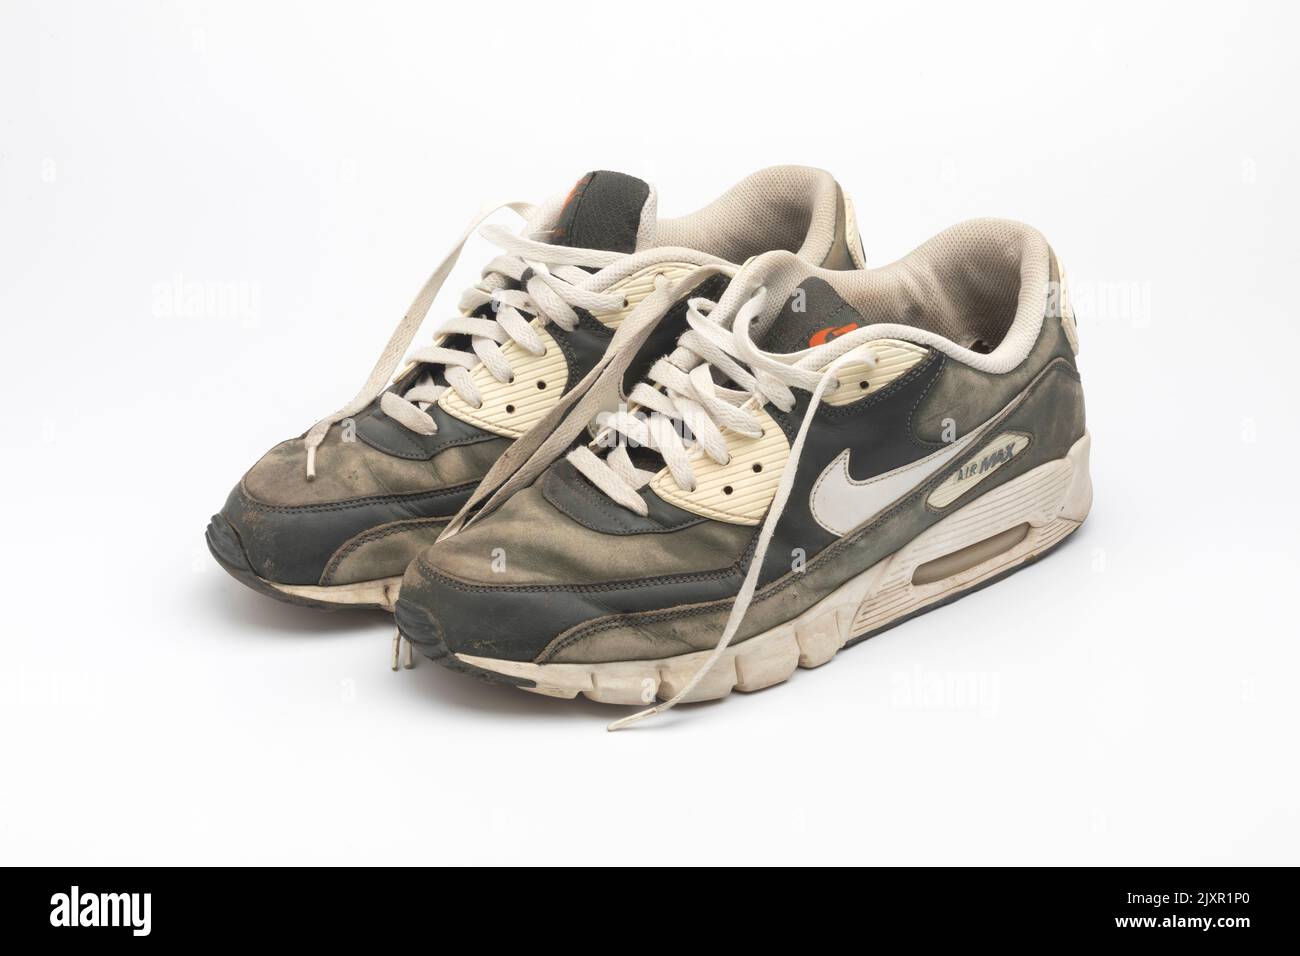 Ein altes, schmutziges, abgenutztes und verblassenes Paar Nike Air Max Sportschuhe Stockfoto